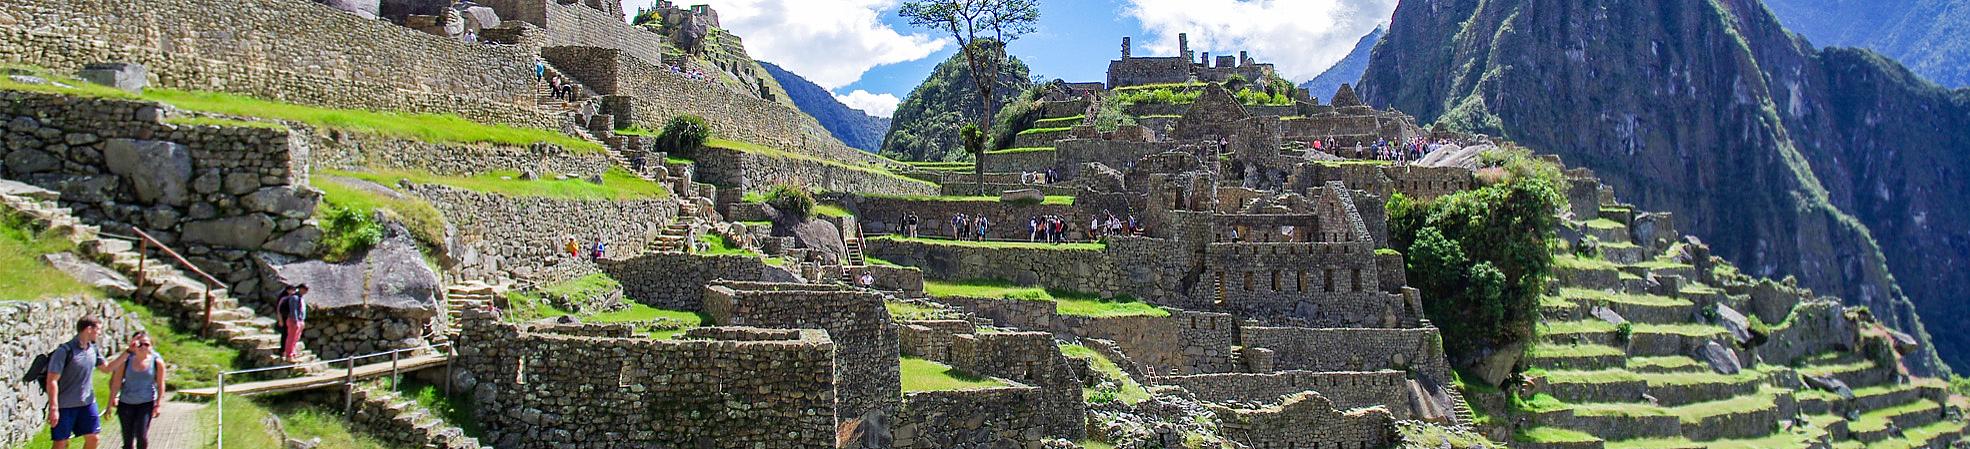 Peru Private Tours